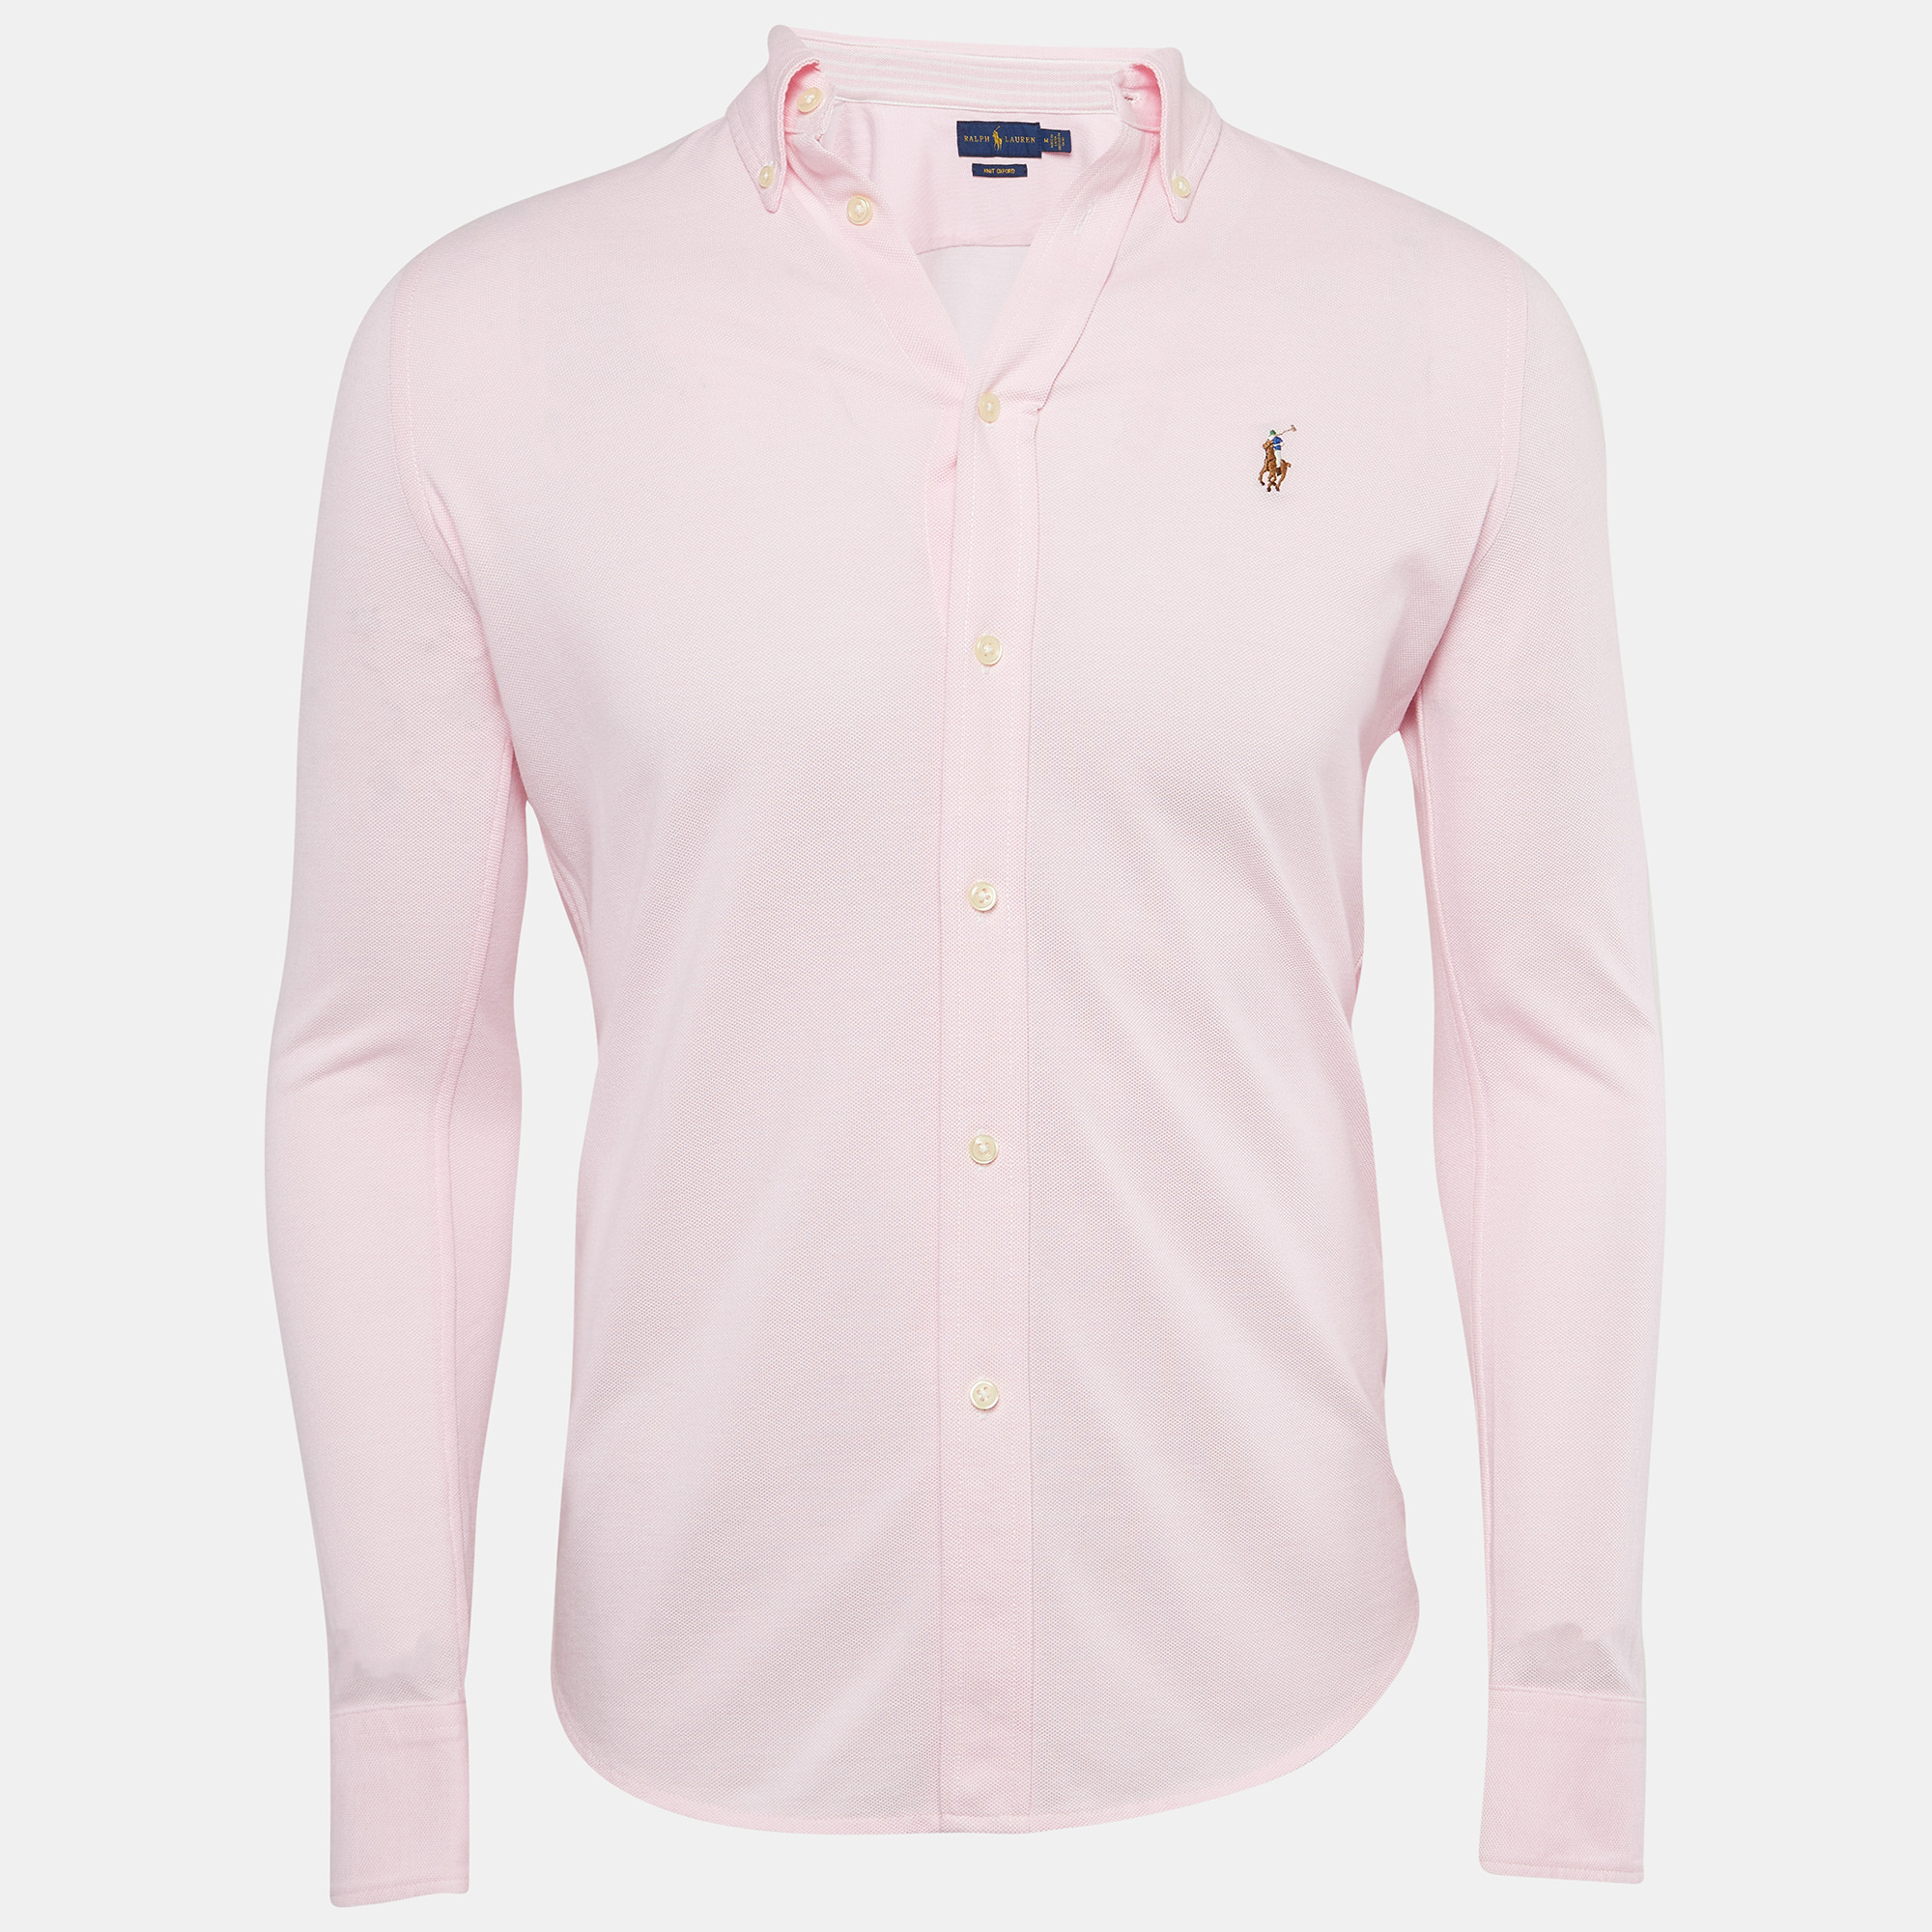 Ralph lauren pink cotton knit oxford button down shirt m